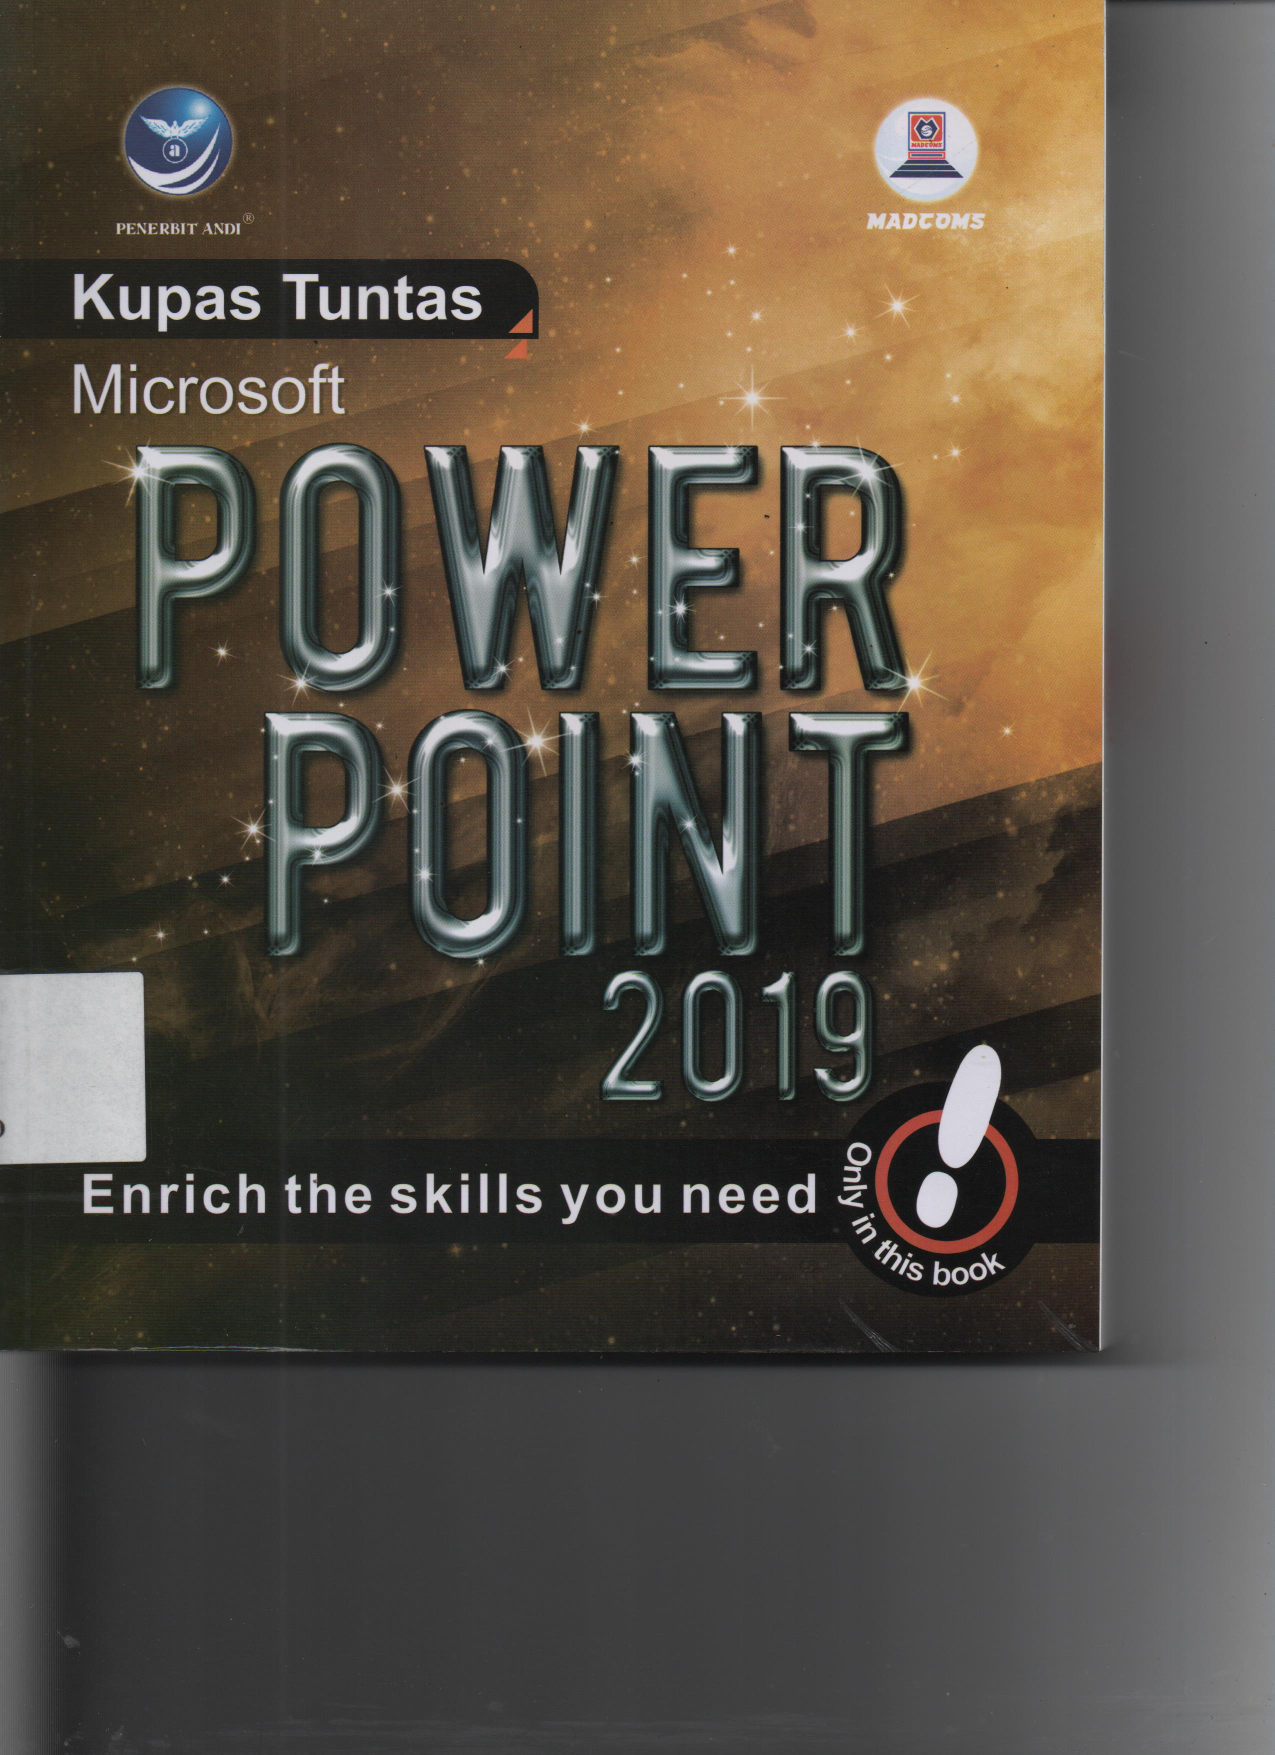 Kupas Tuntas Microsoft Power Point 2019